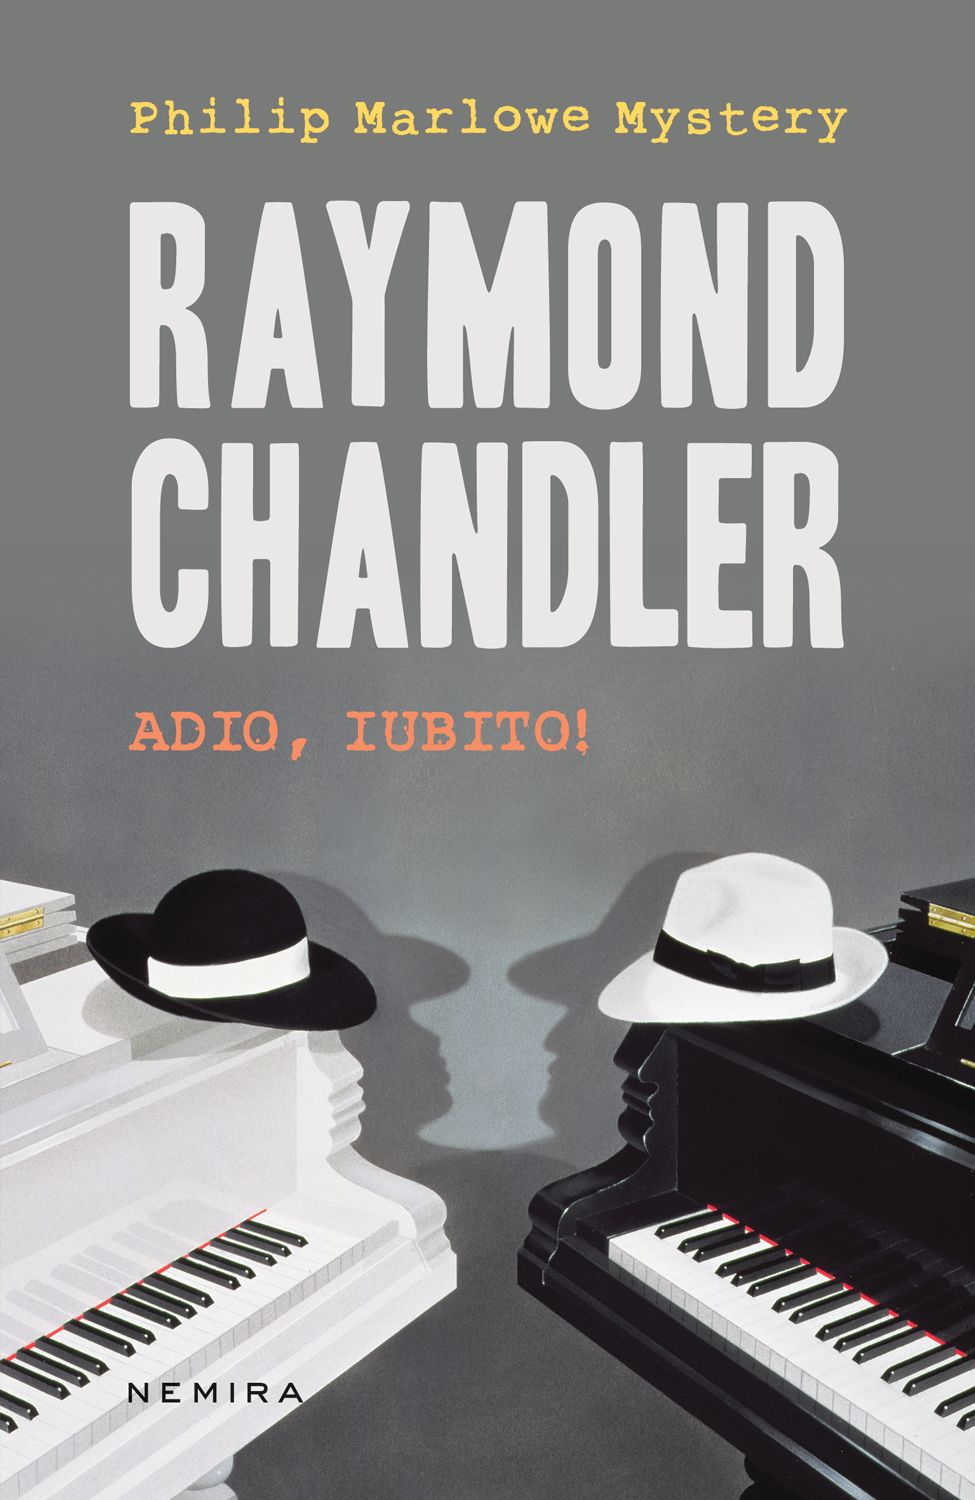 eBook Adio, iubito! - Raymond Chandler